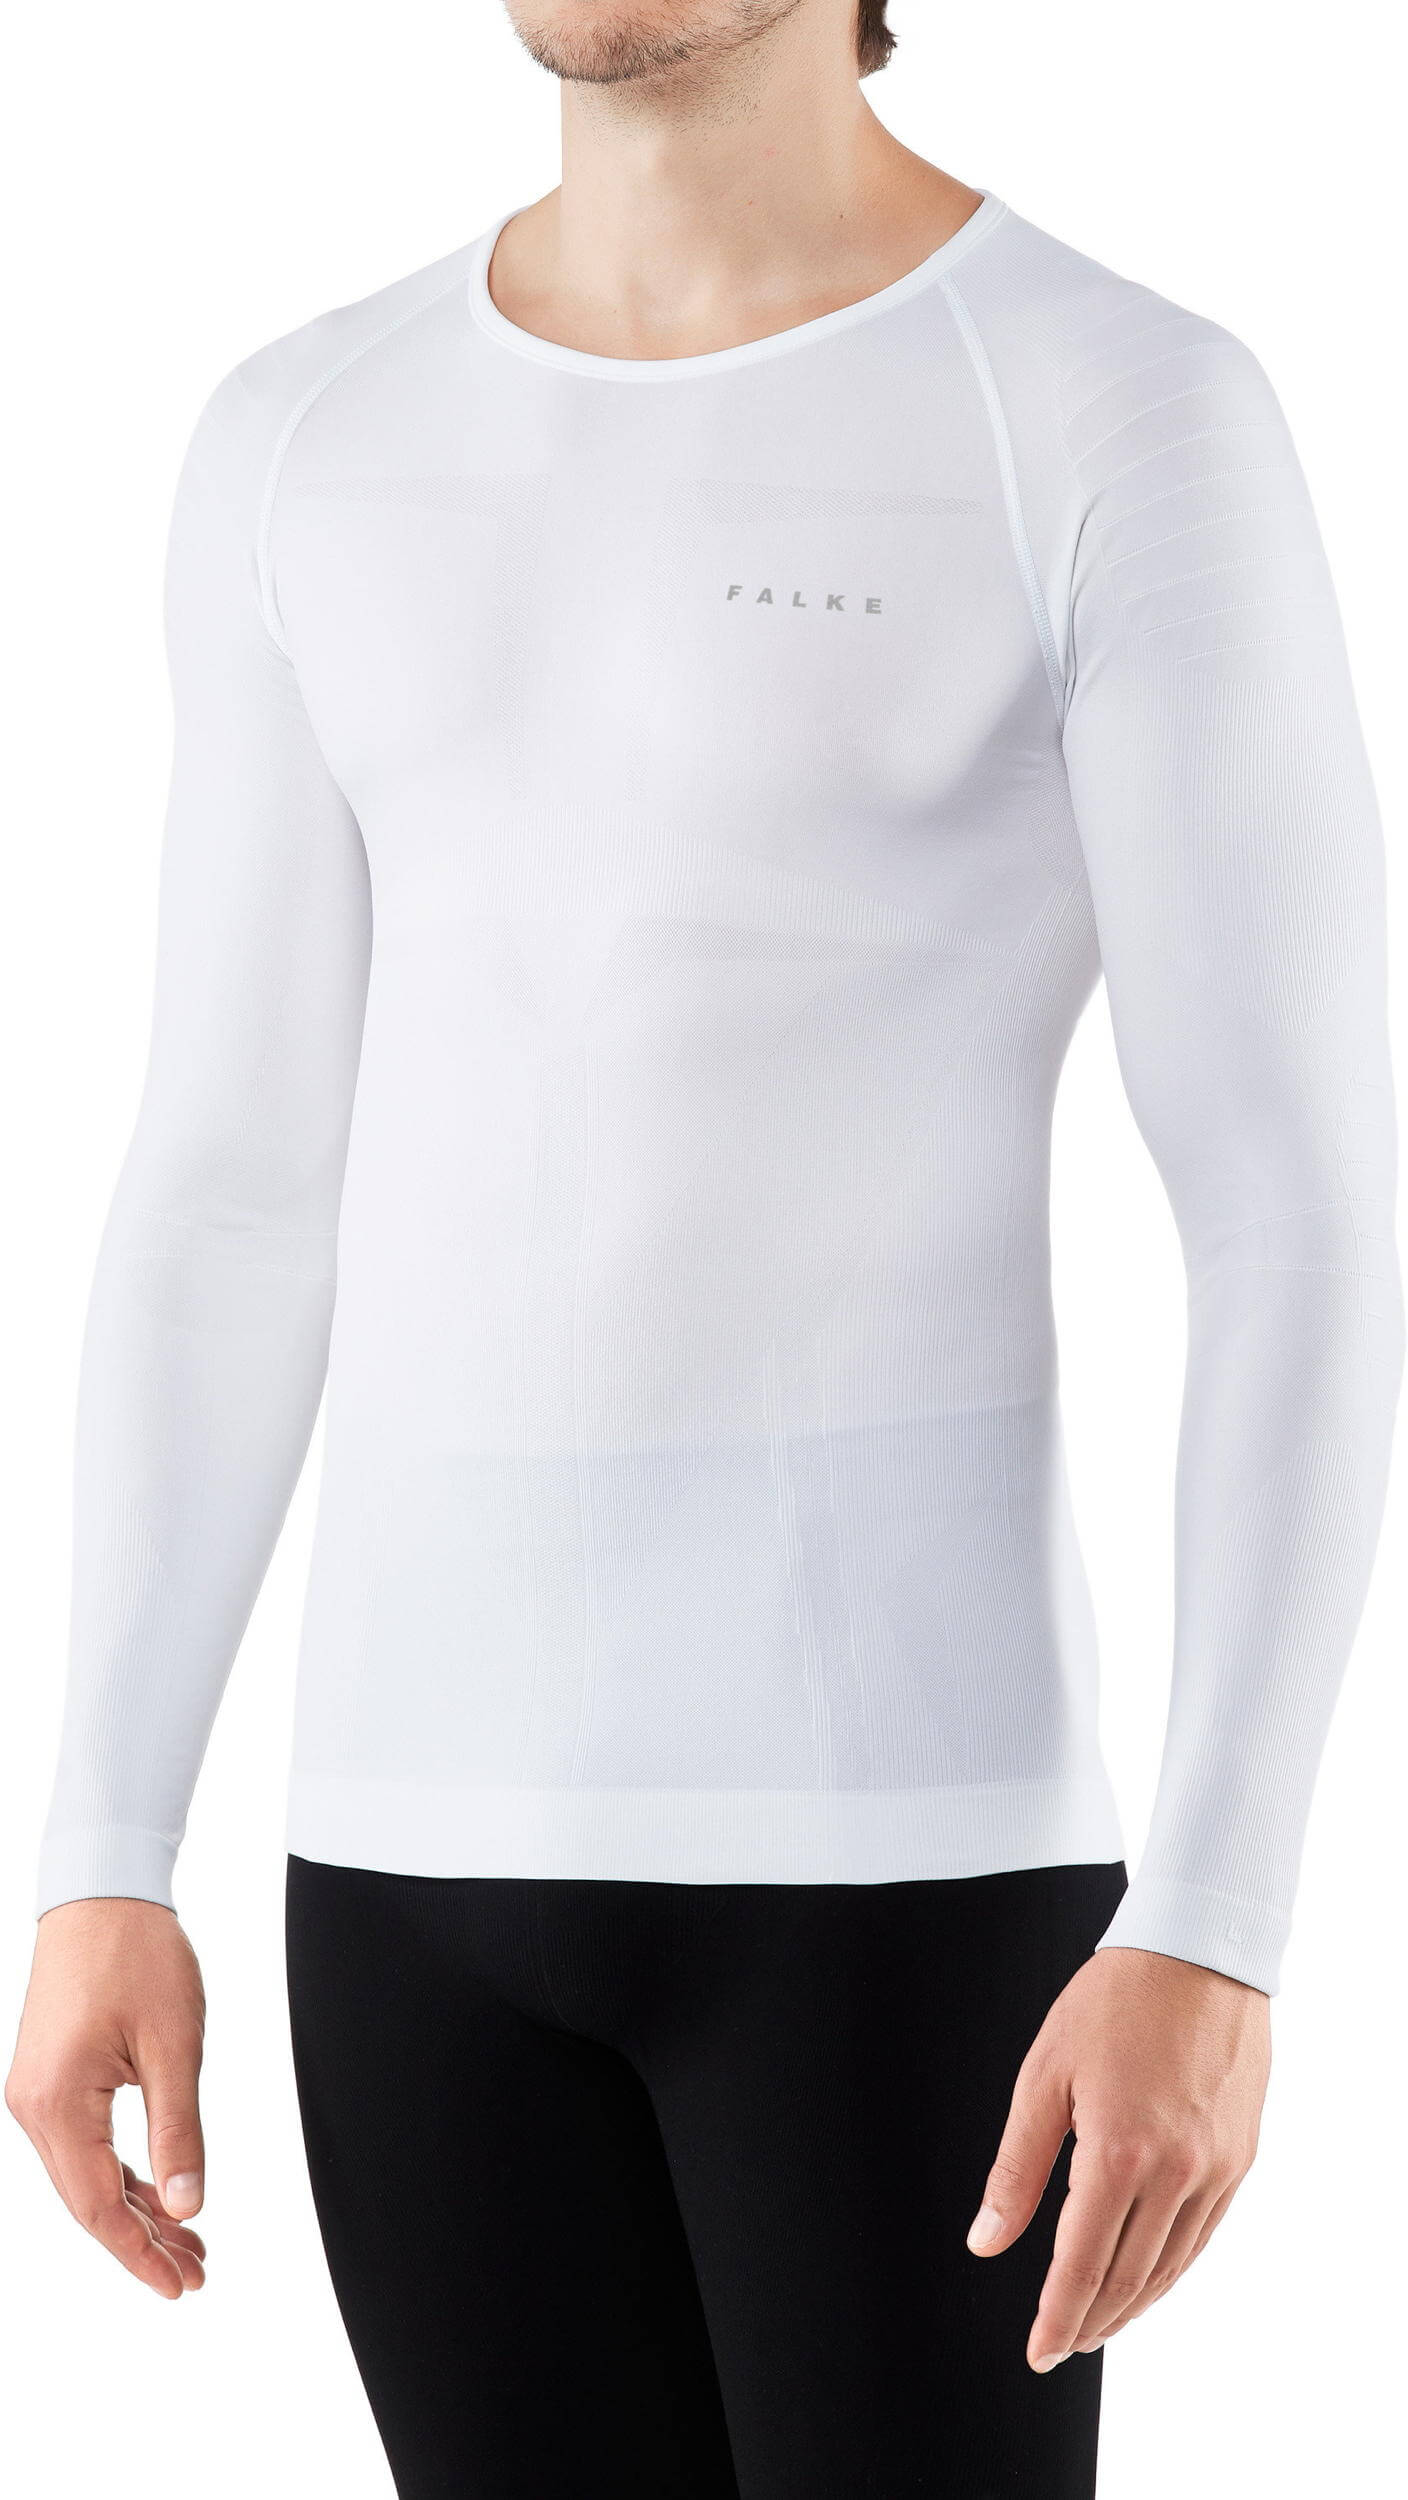 Falke Warm Longsleeved Shirt, white